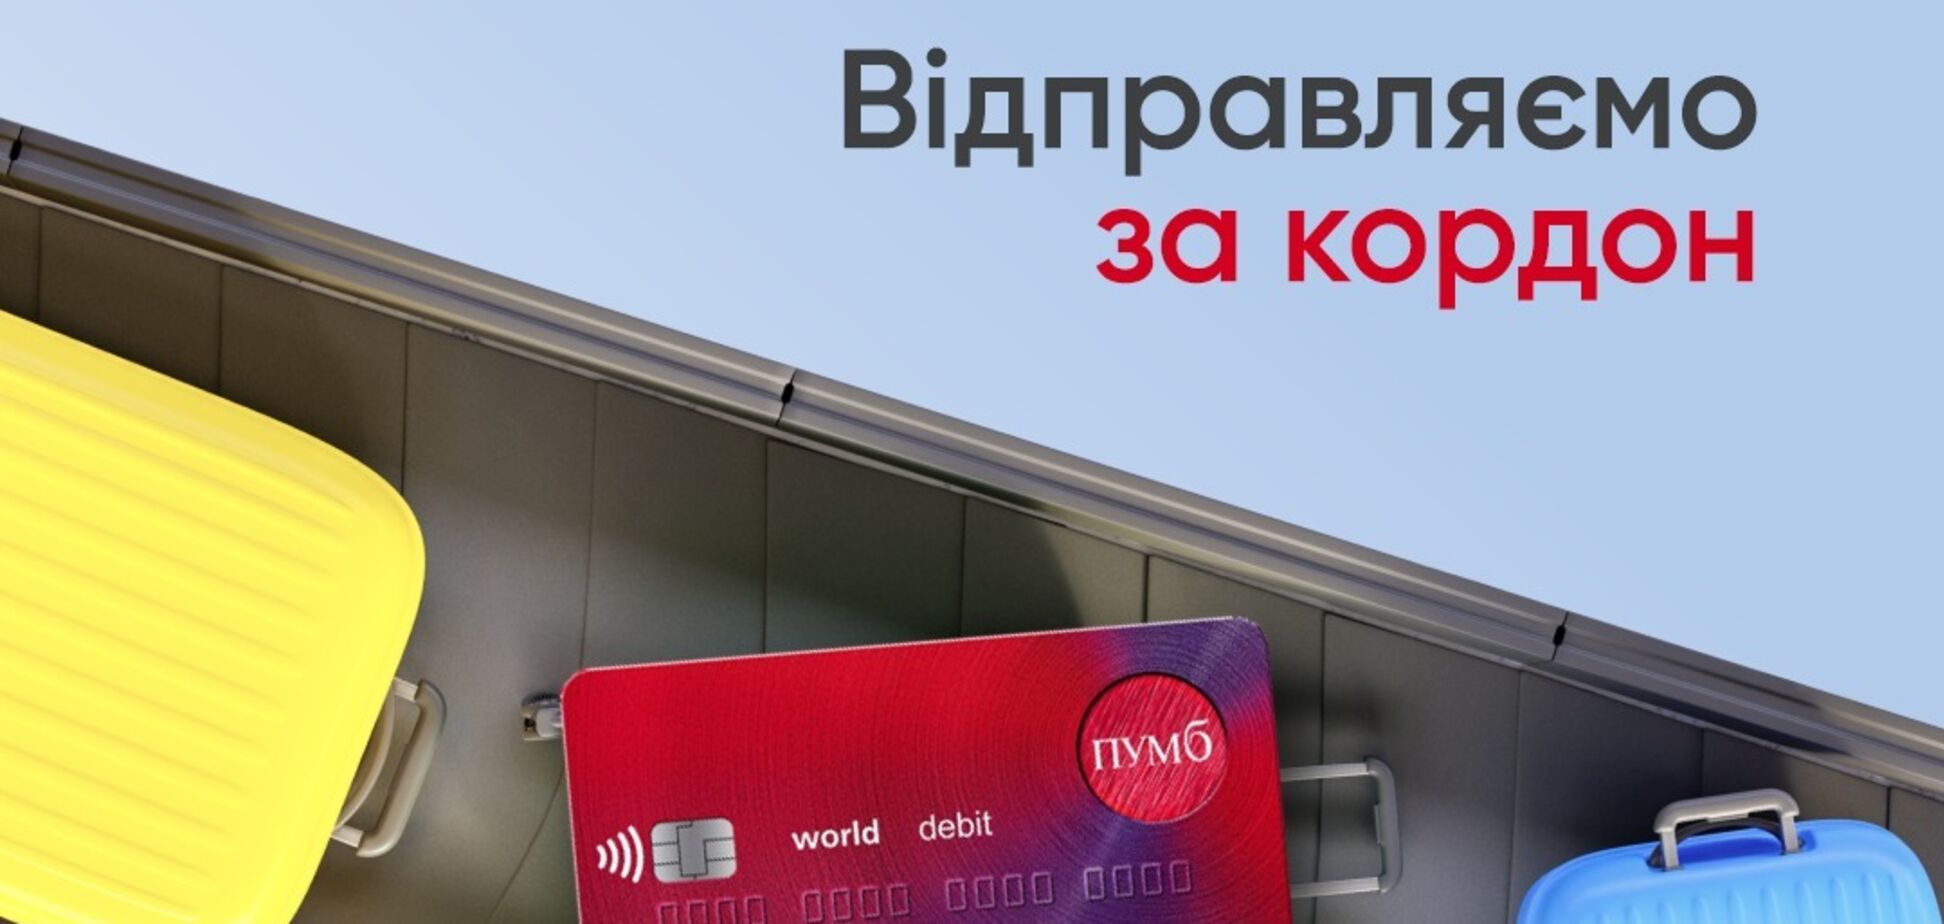 ПУМБ запустив доставку карток за межі України: як замовити